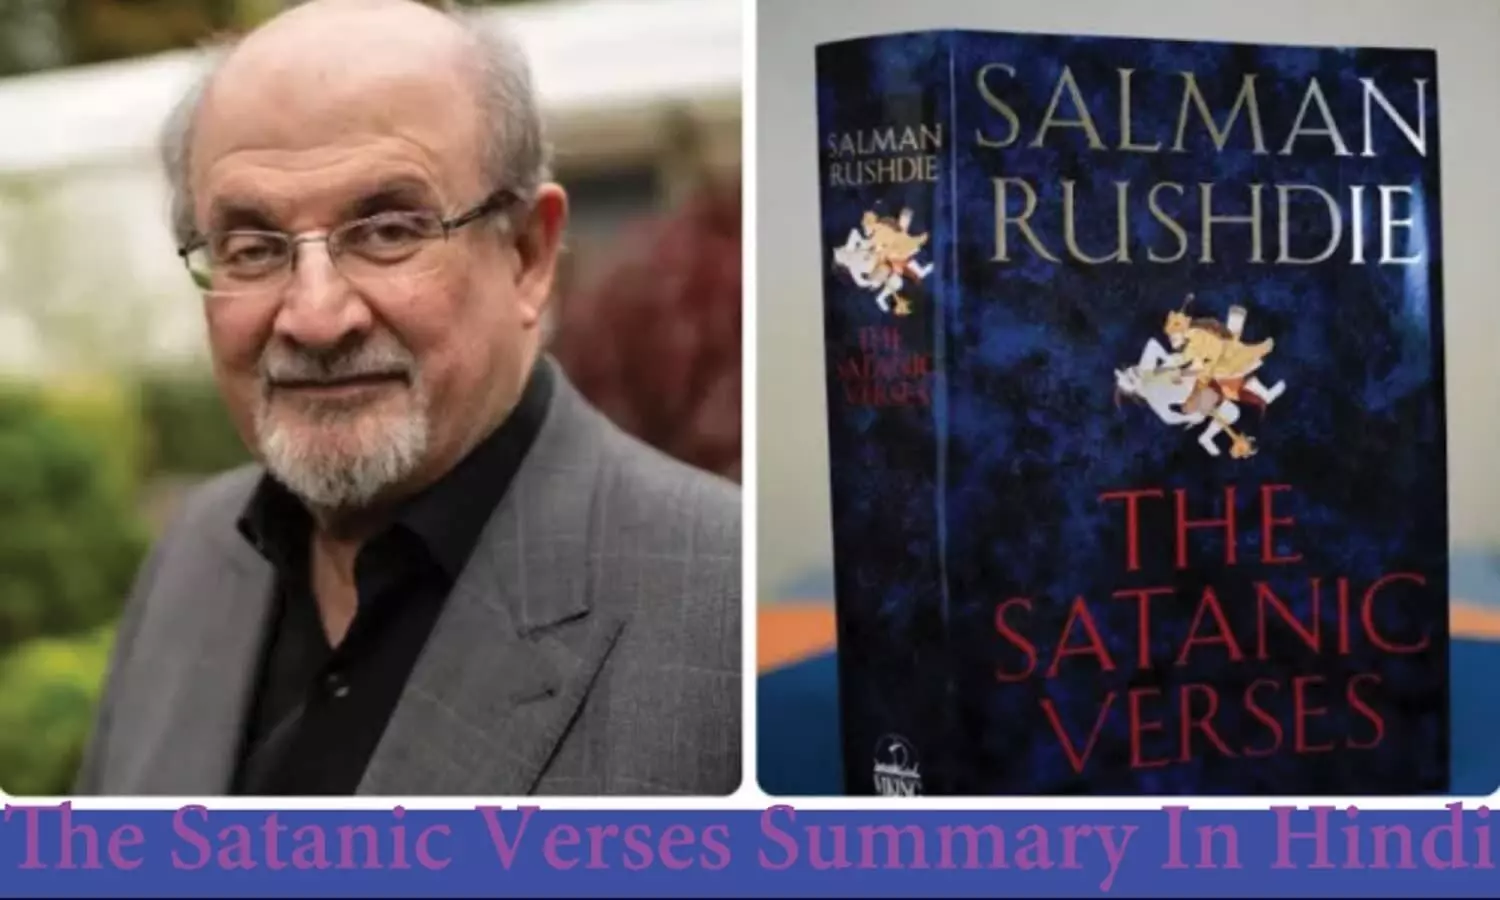 The Satanic Verses Summary In Hindi: सलमान रुश्दी की किताब द सैटेनिक वर्सेज में क्या लिखा है